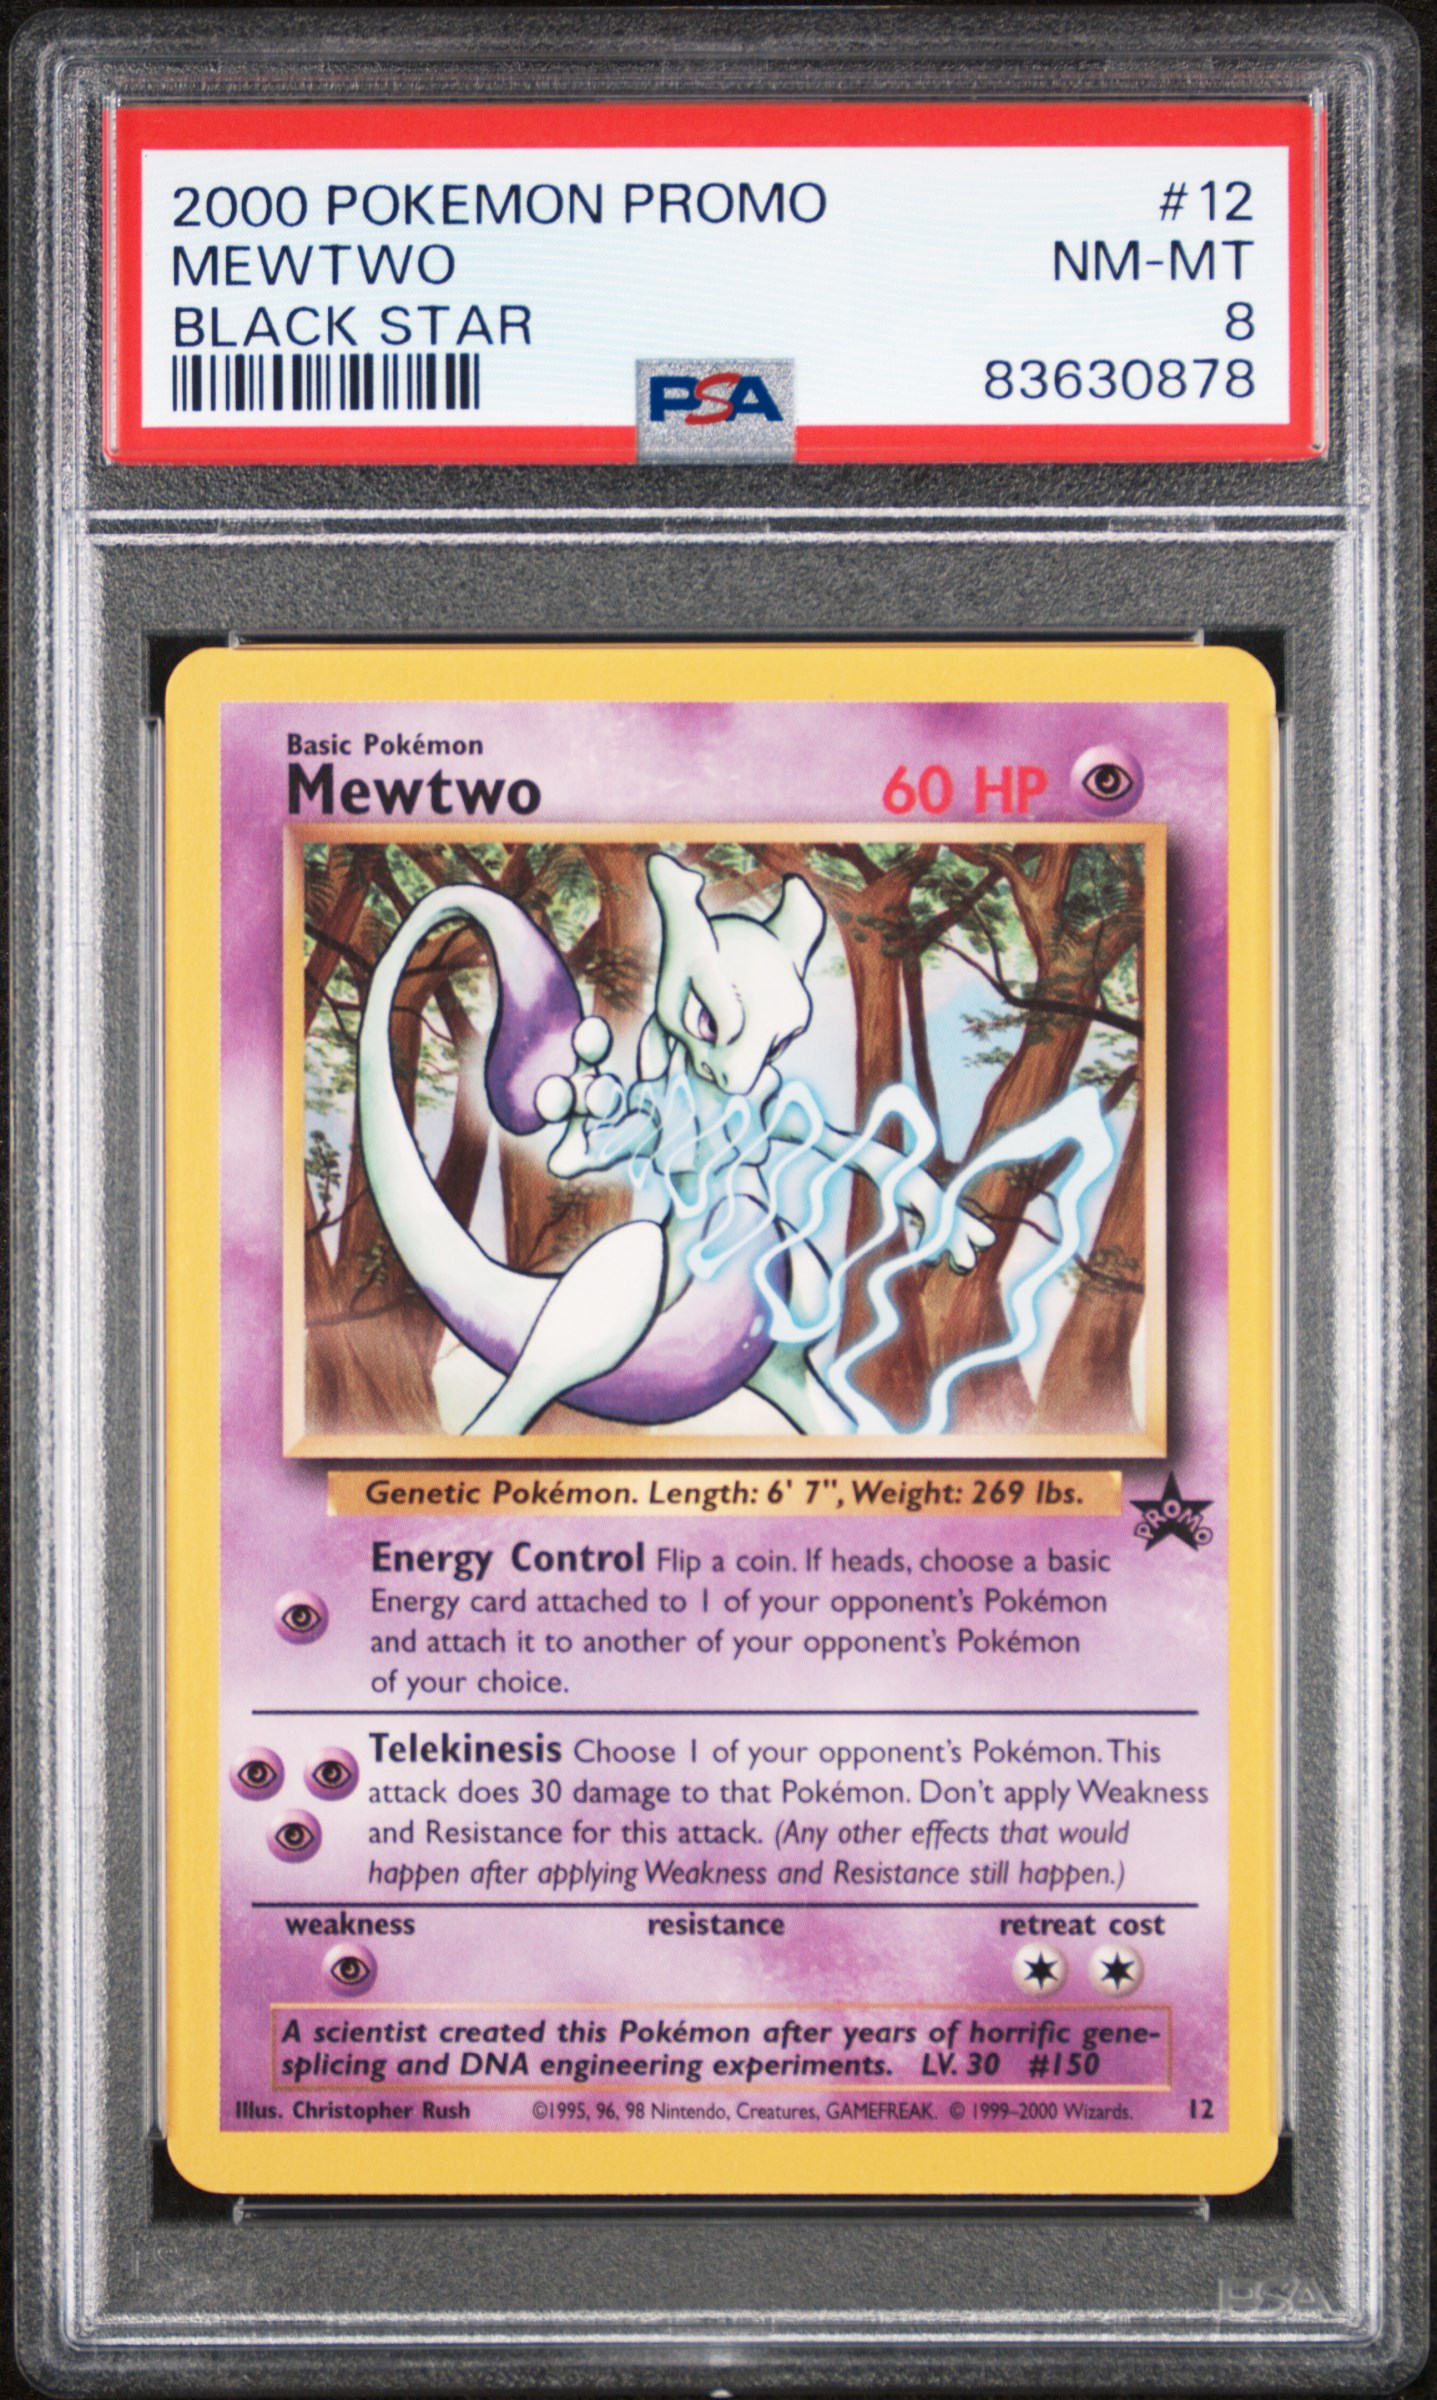 2000 Pokemon Promo Black Star 12 Mewtwo – PSA NM-MT 8